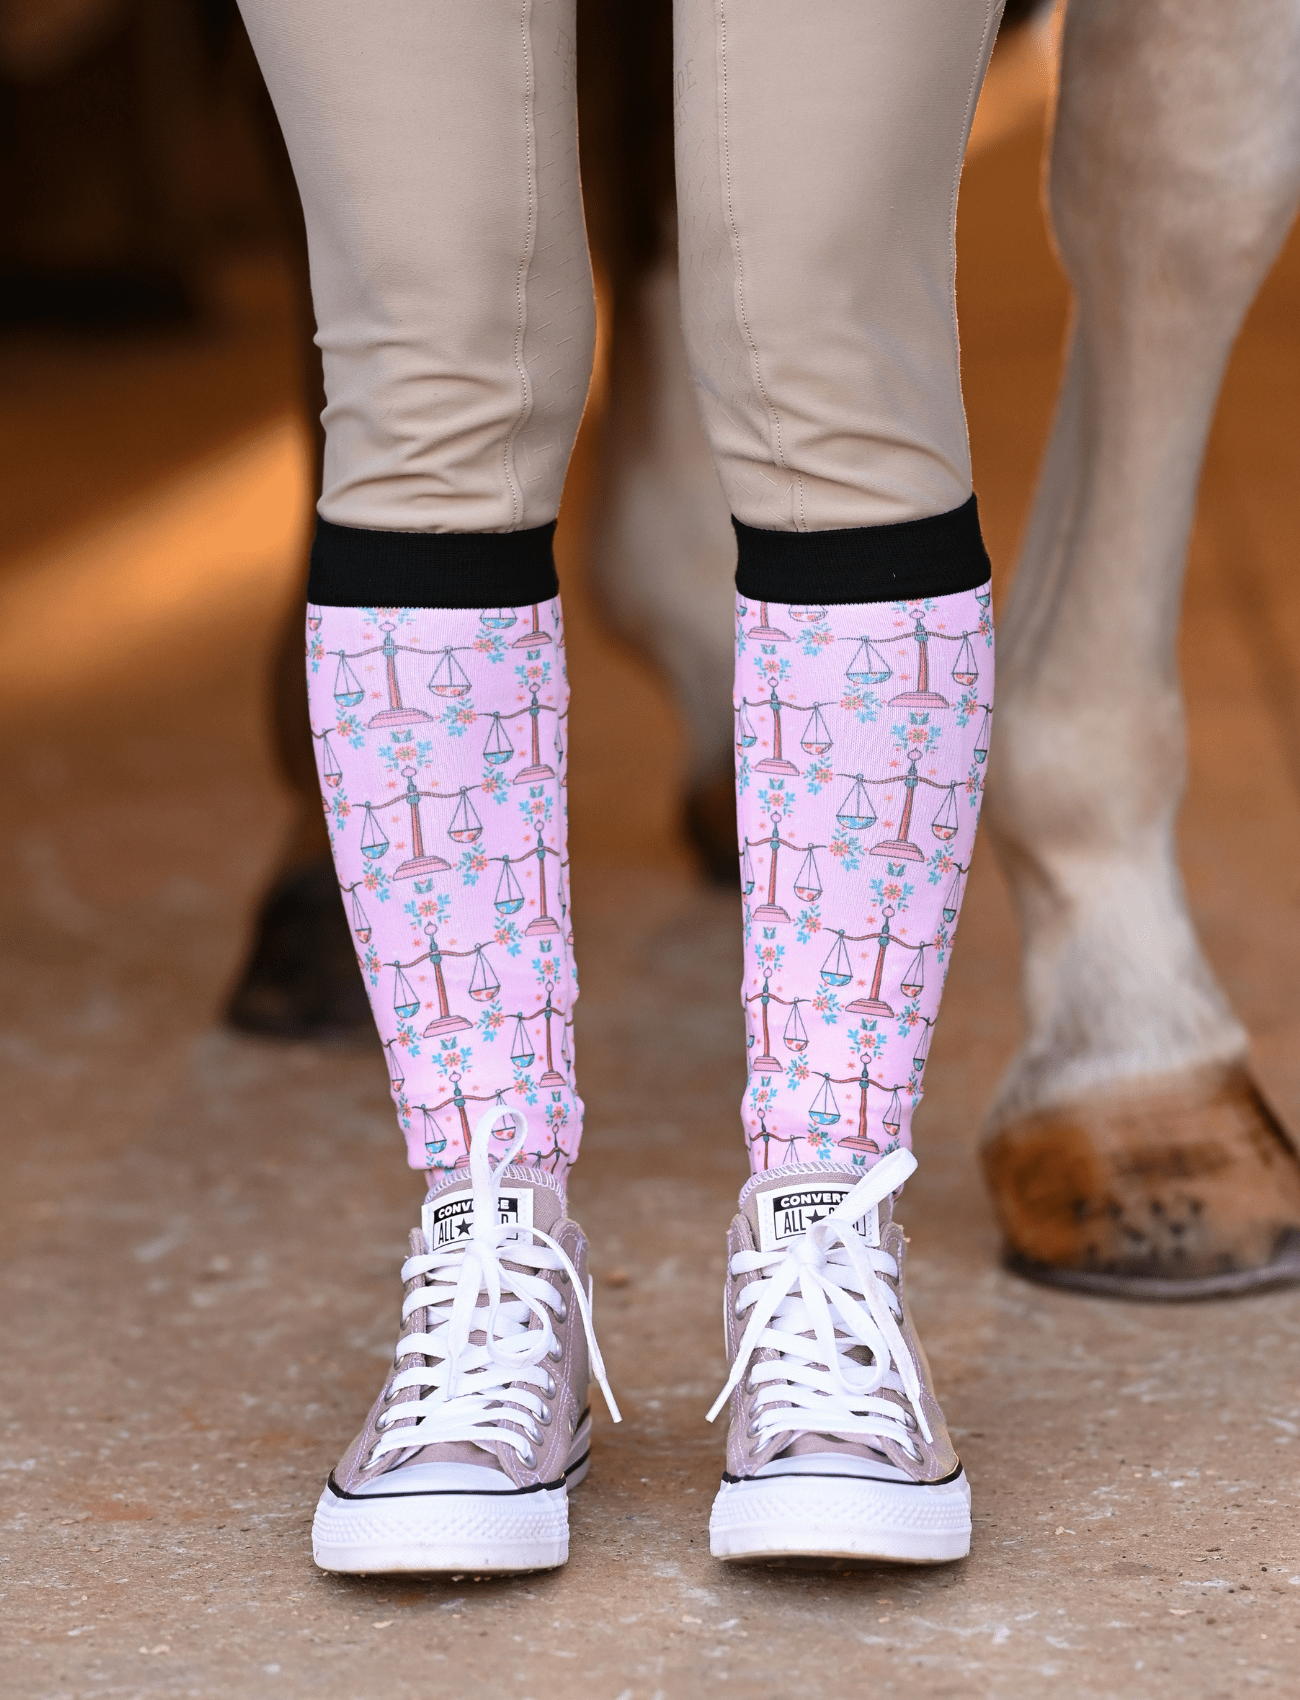 D&S LIMITED EDITION Limited Edition Limited Pretty Libra Socks equestrian boot socks boot socks thin socks riding socks pattern socks tall socks funny socks knee high socks horse socks horse show socks